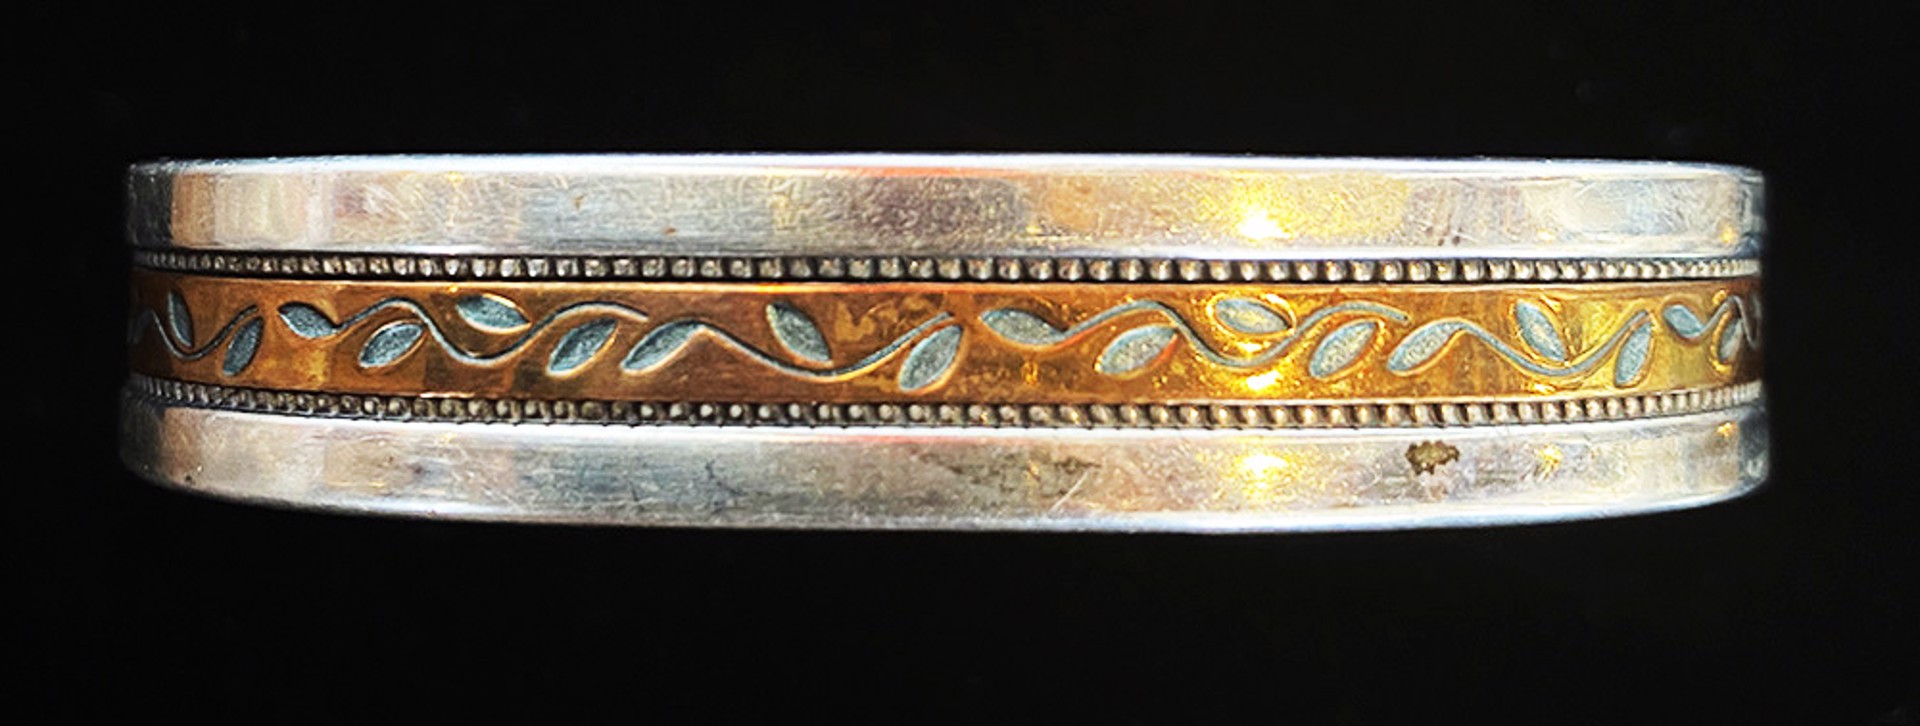 Copper & Sterling Bracelet by Artist Unknown